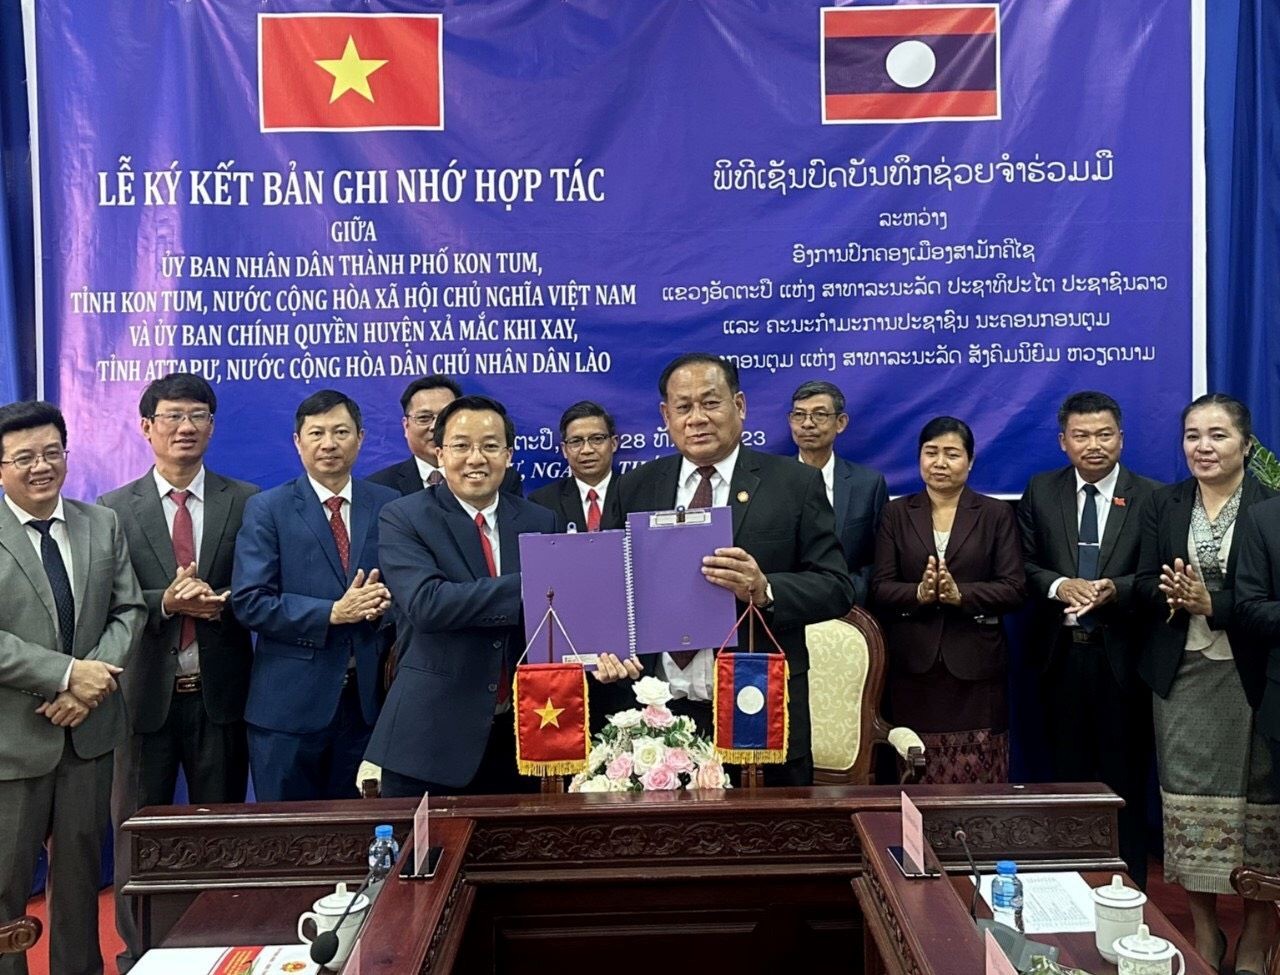 Chính quyền TP Kon Tum và huyện Xả Mắc Khi Xay (Lào) ký kết hợp tác phát triển.